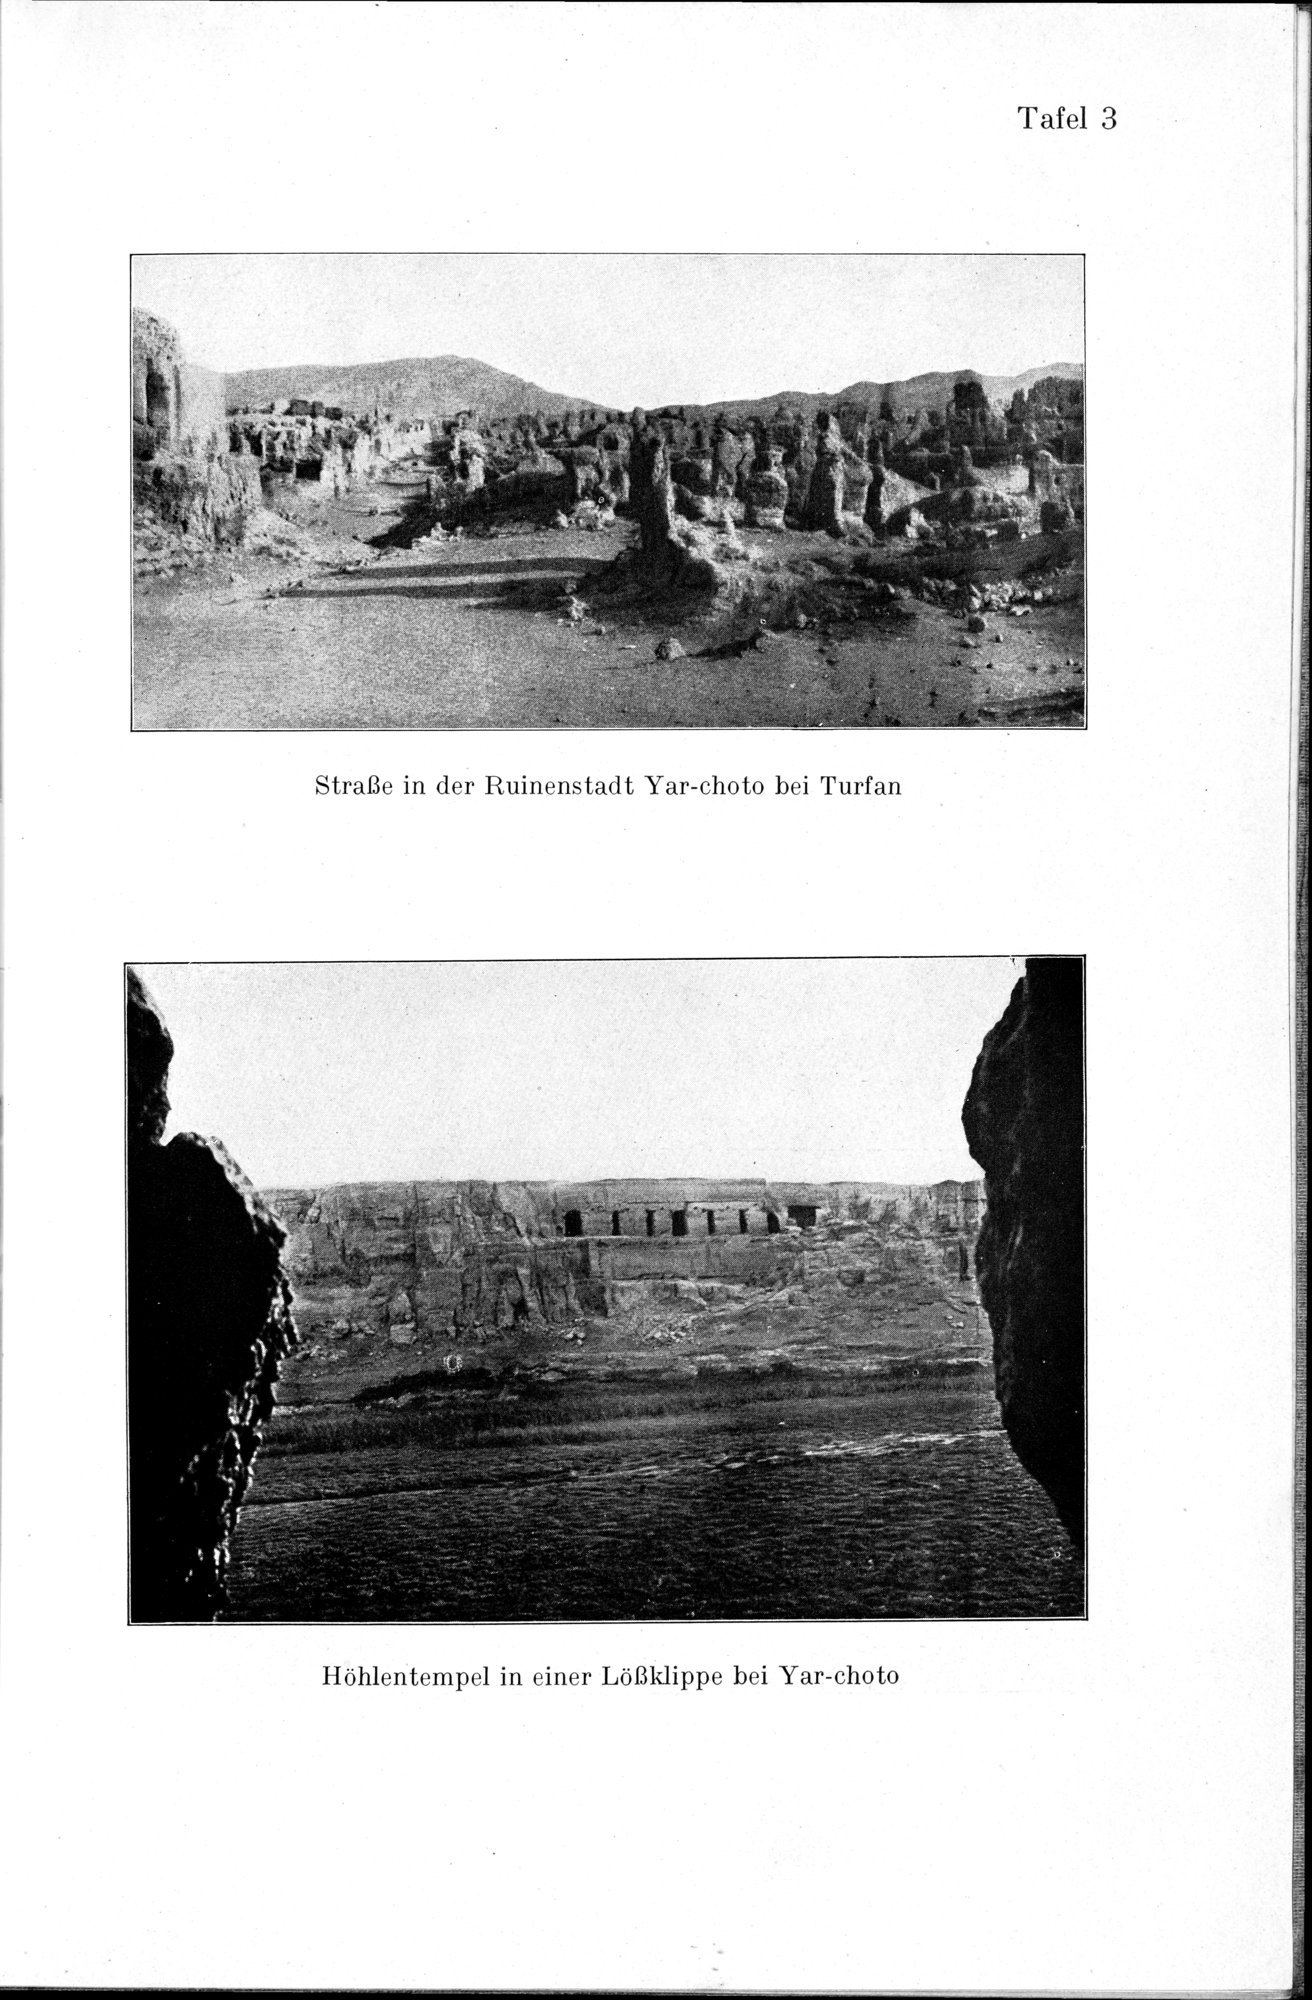 Auf Hellas Spuren in Ostturkistan : vol.1 / Page 43 (Grayscale High Resolution Image)